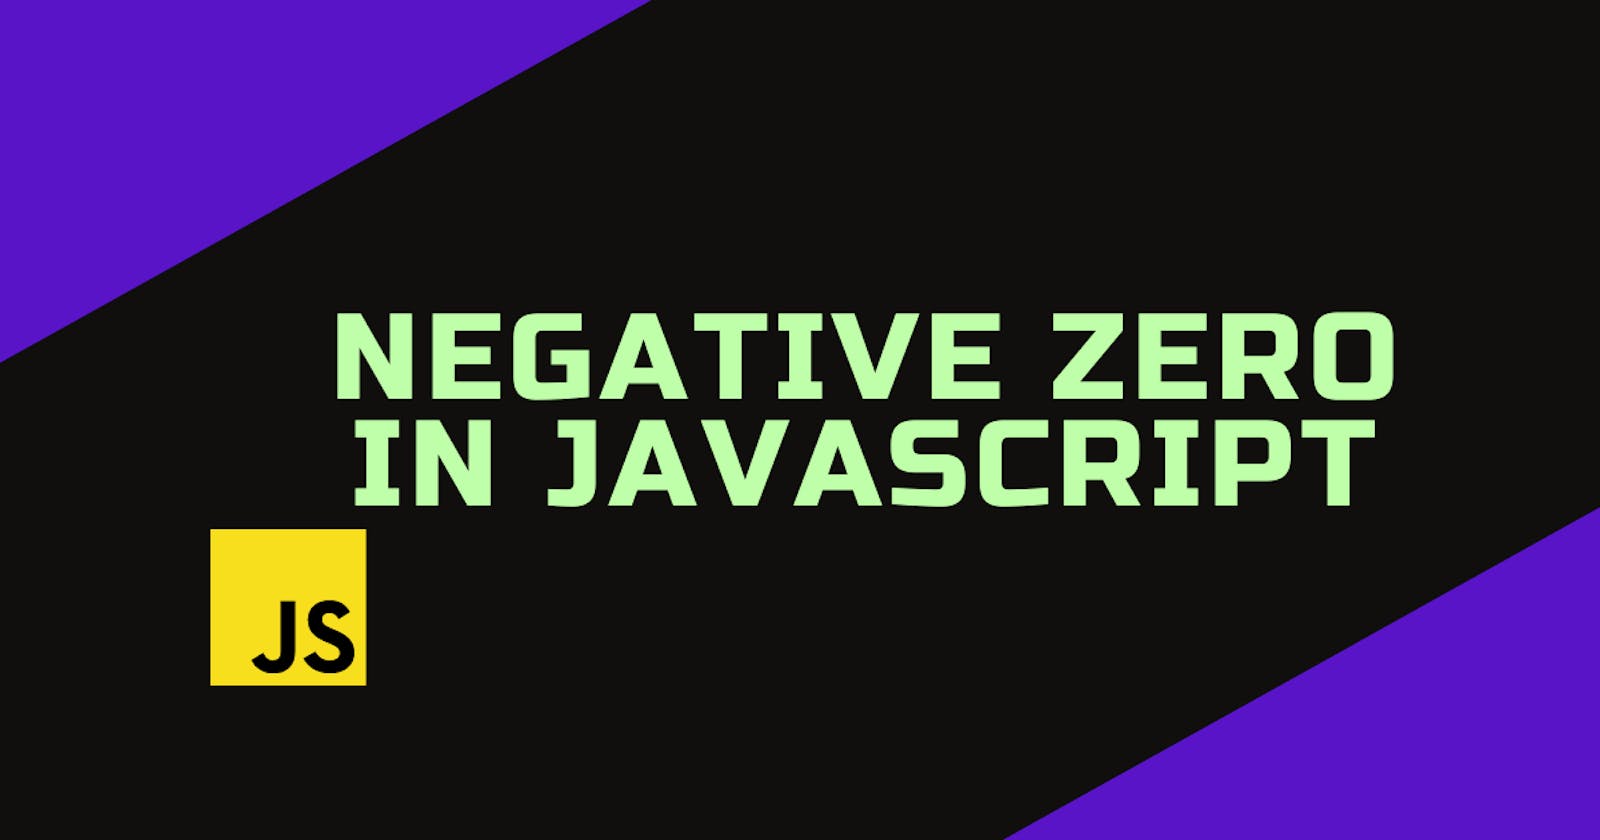 Negative zero in JavaScript